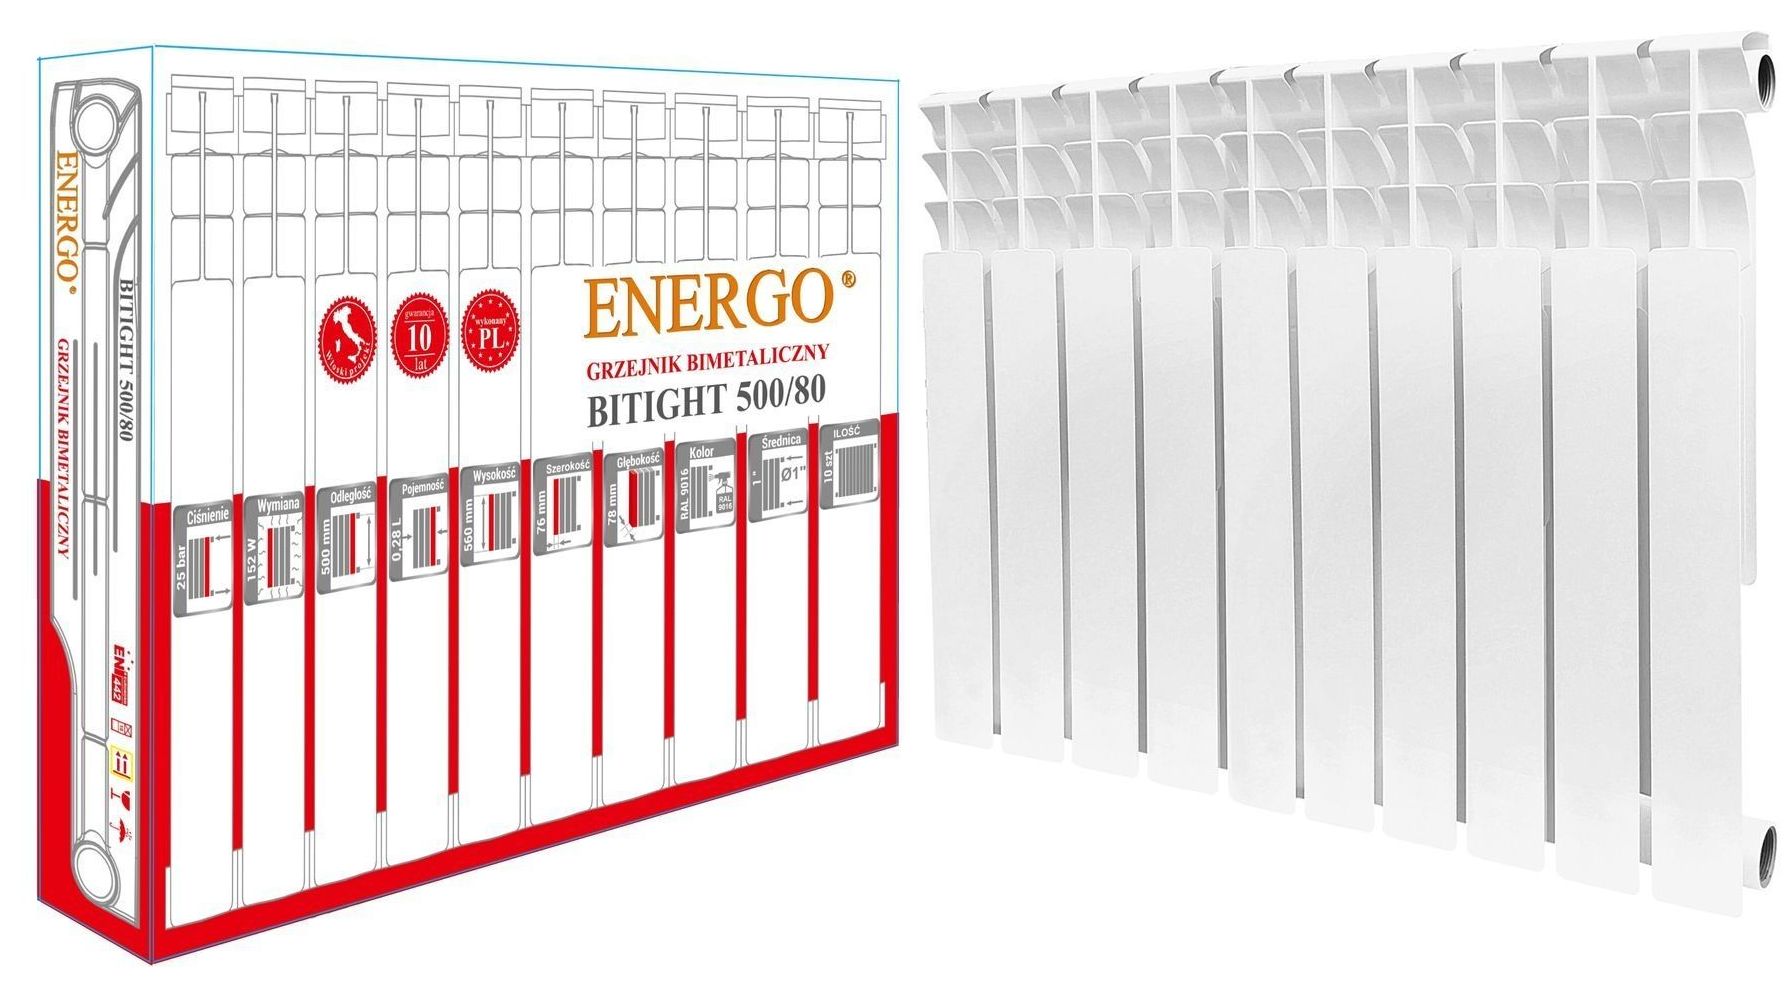 Характеристики радиатор для отопления Energo BITIGHT 500/80 (кратно 10) 000016866